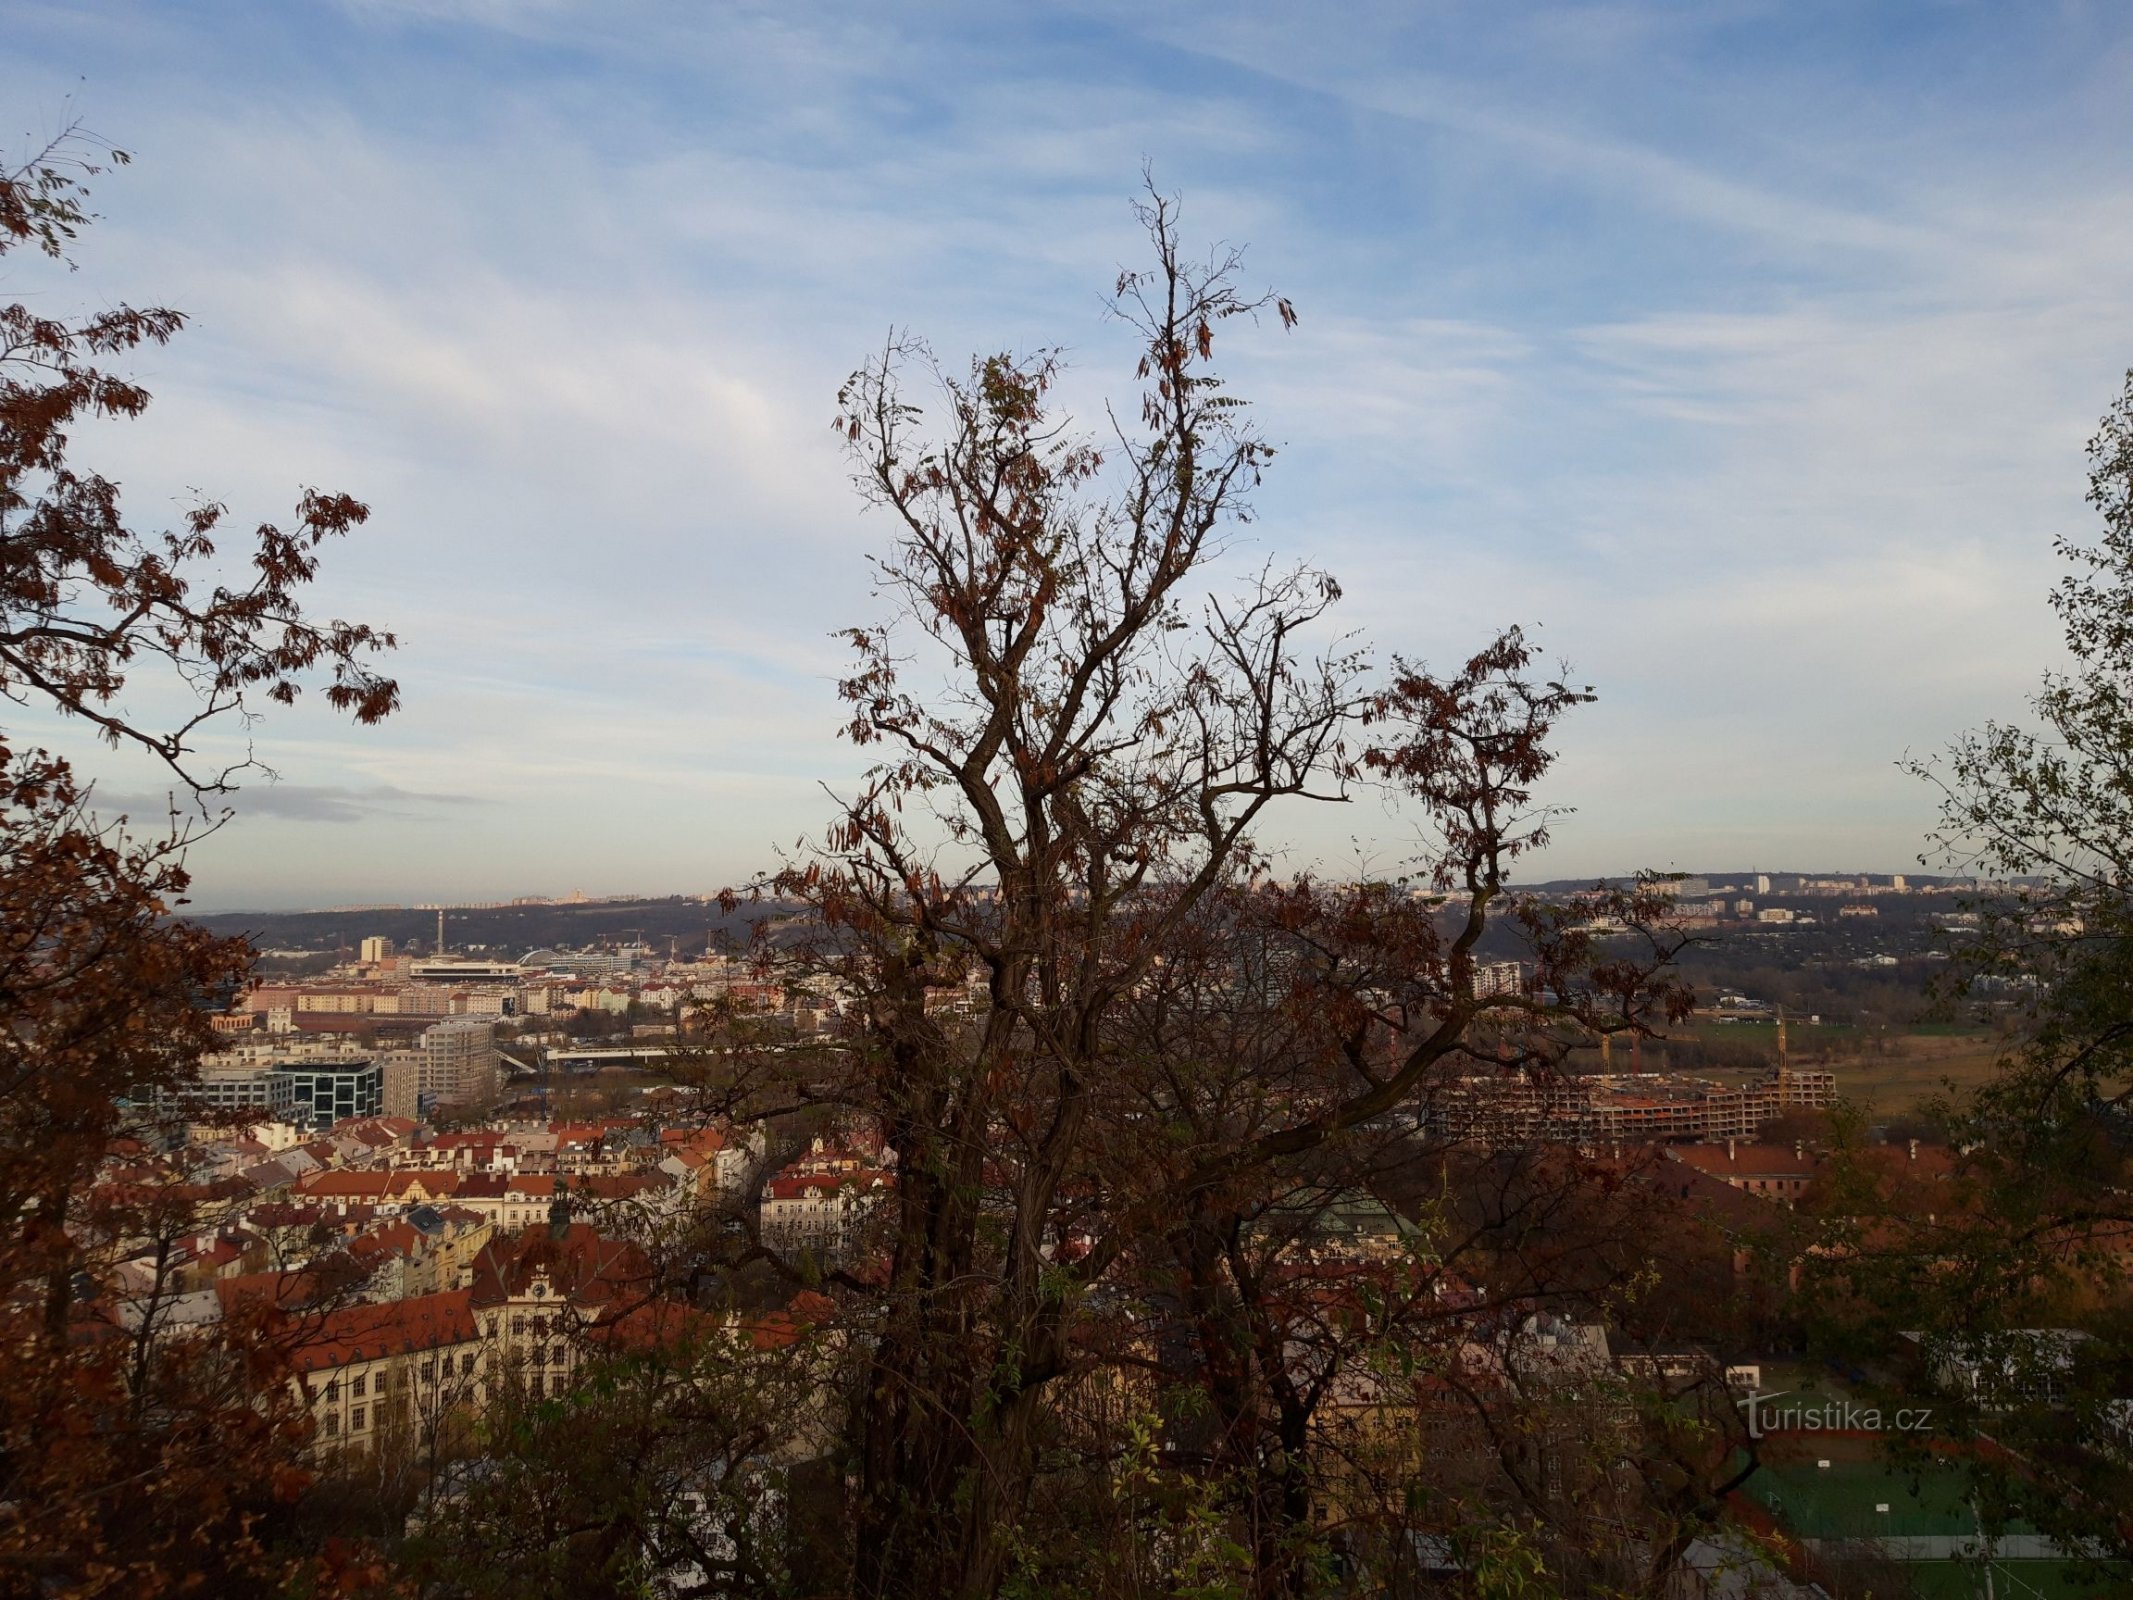 Praga e Vítkův vrch